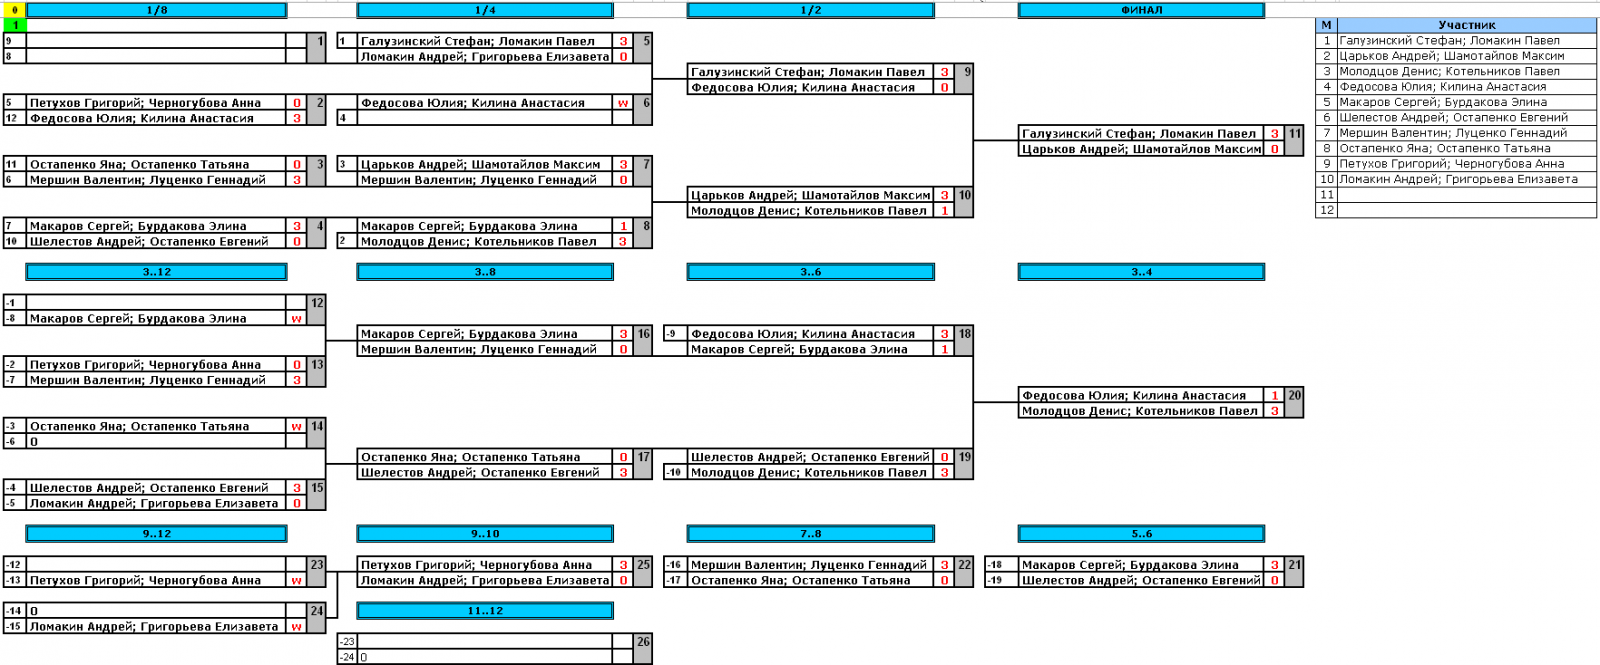 результаты турнира Парный бесплатный турнир по Хардбату в Строгино